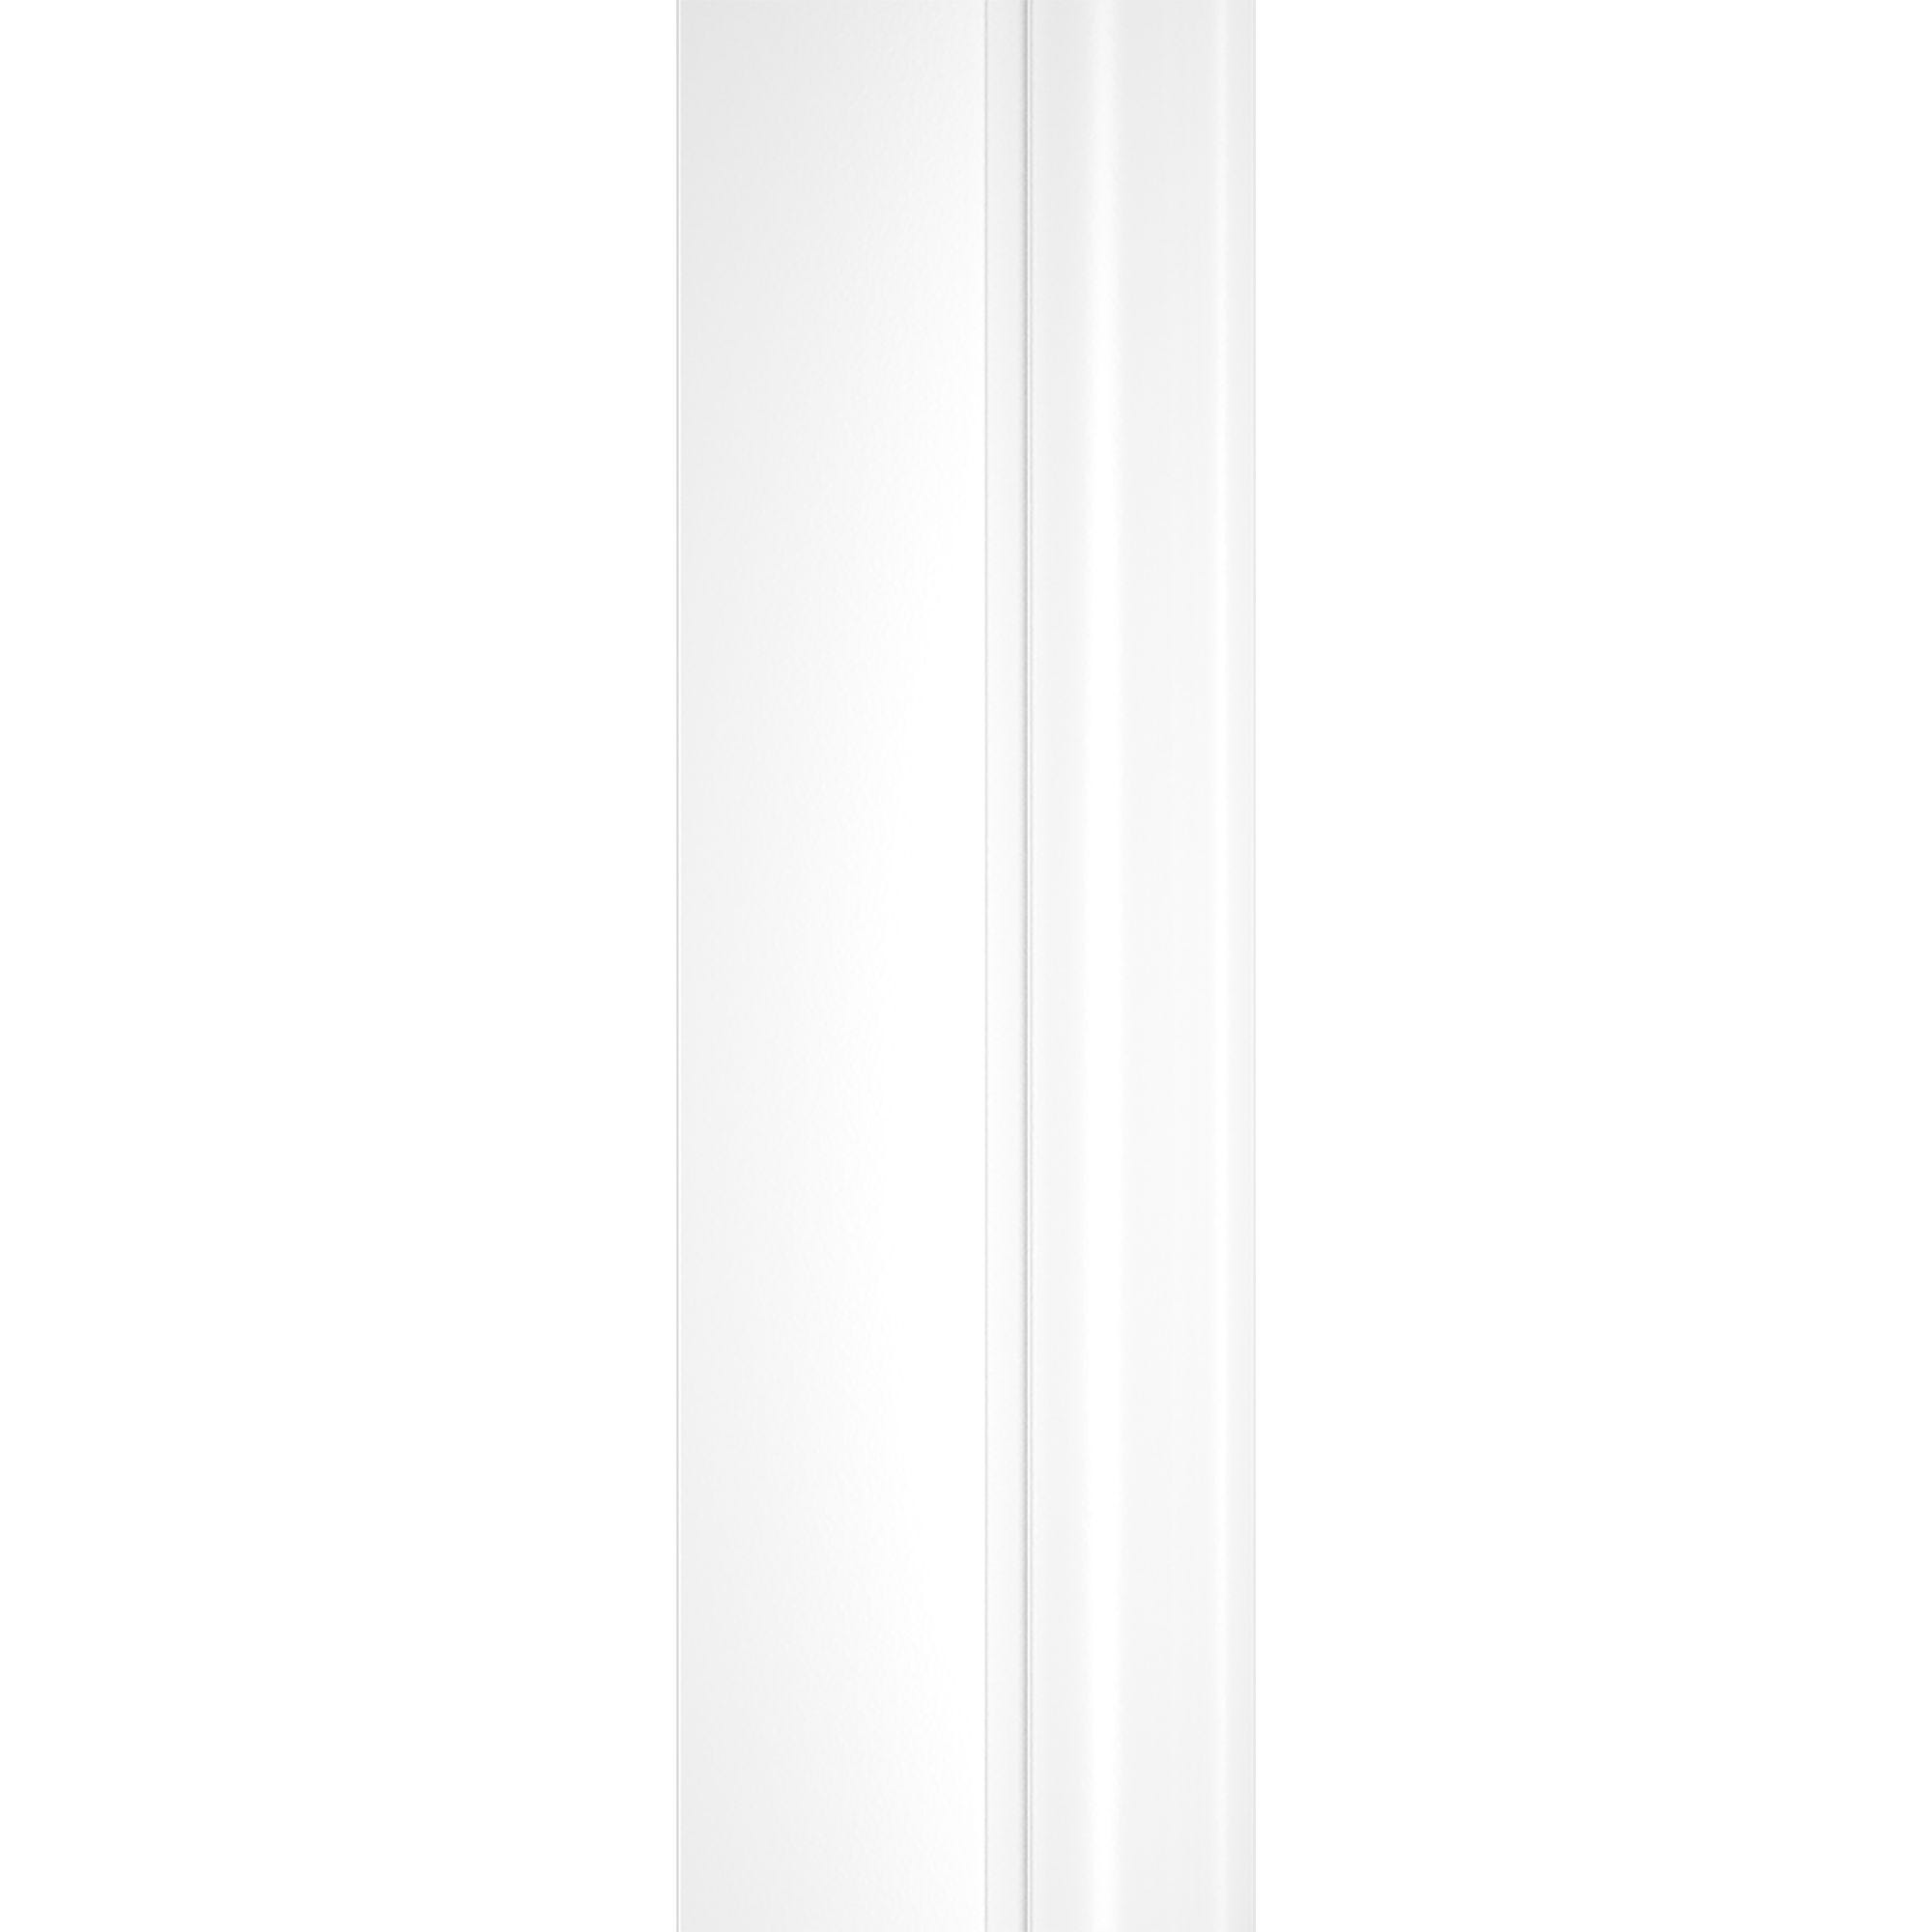 Schulte pare-baignoire pivotant, 114 x 140 cm, paroi de baignoire 2 volets, écran de baignoire mobile, verre 3 mm transparent, profilé blanc 3